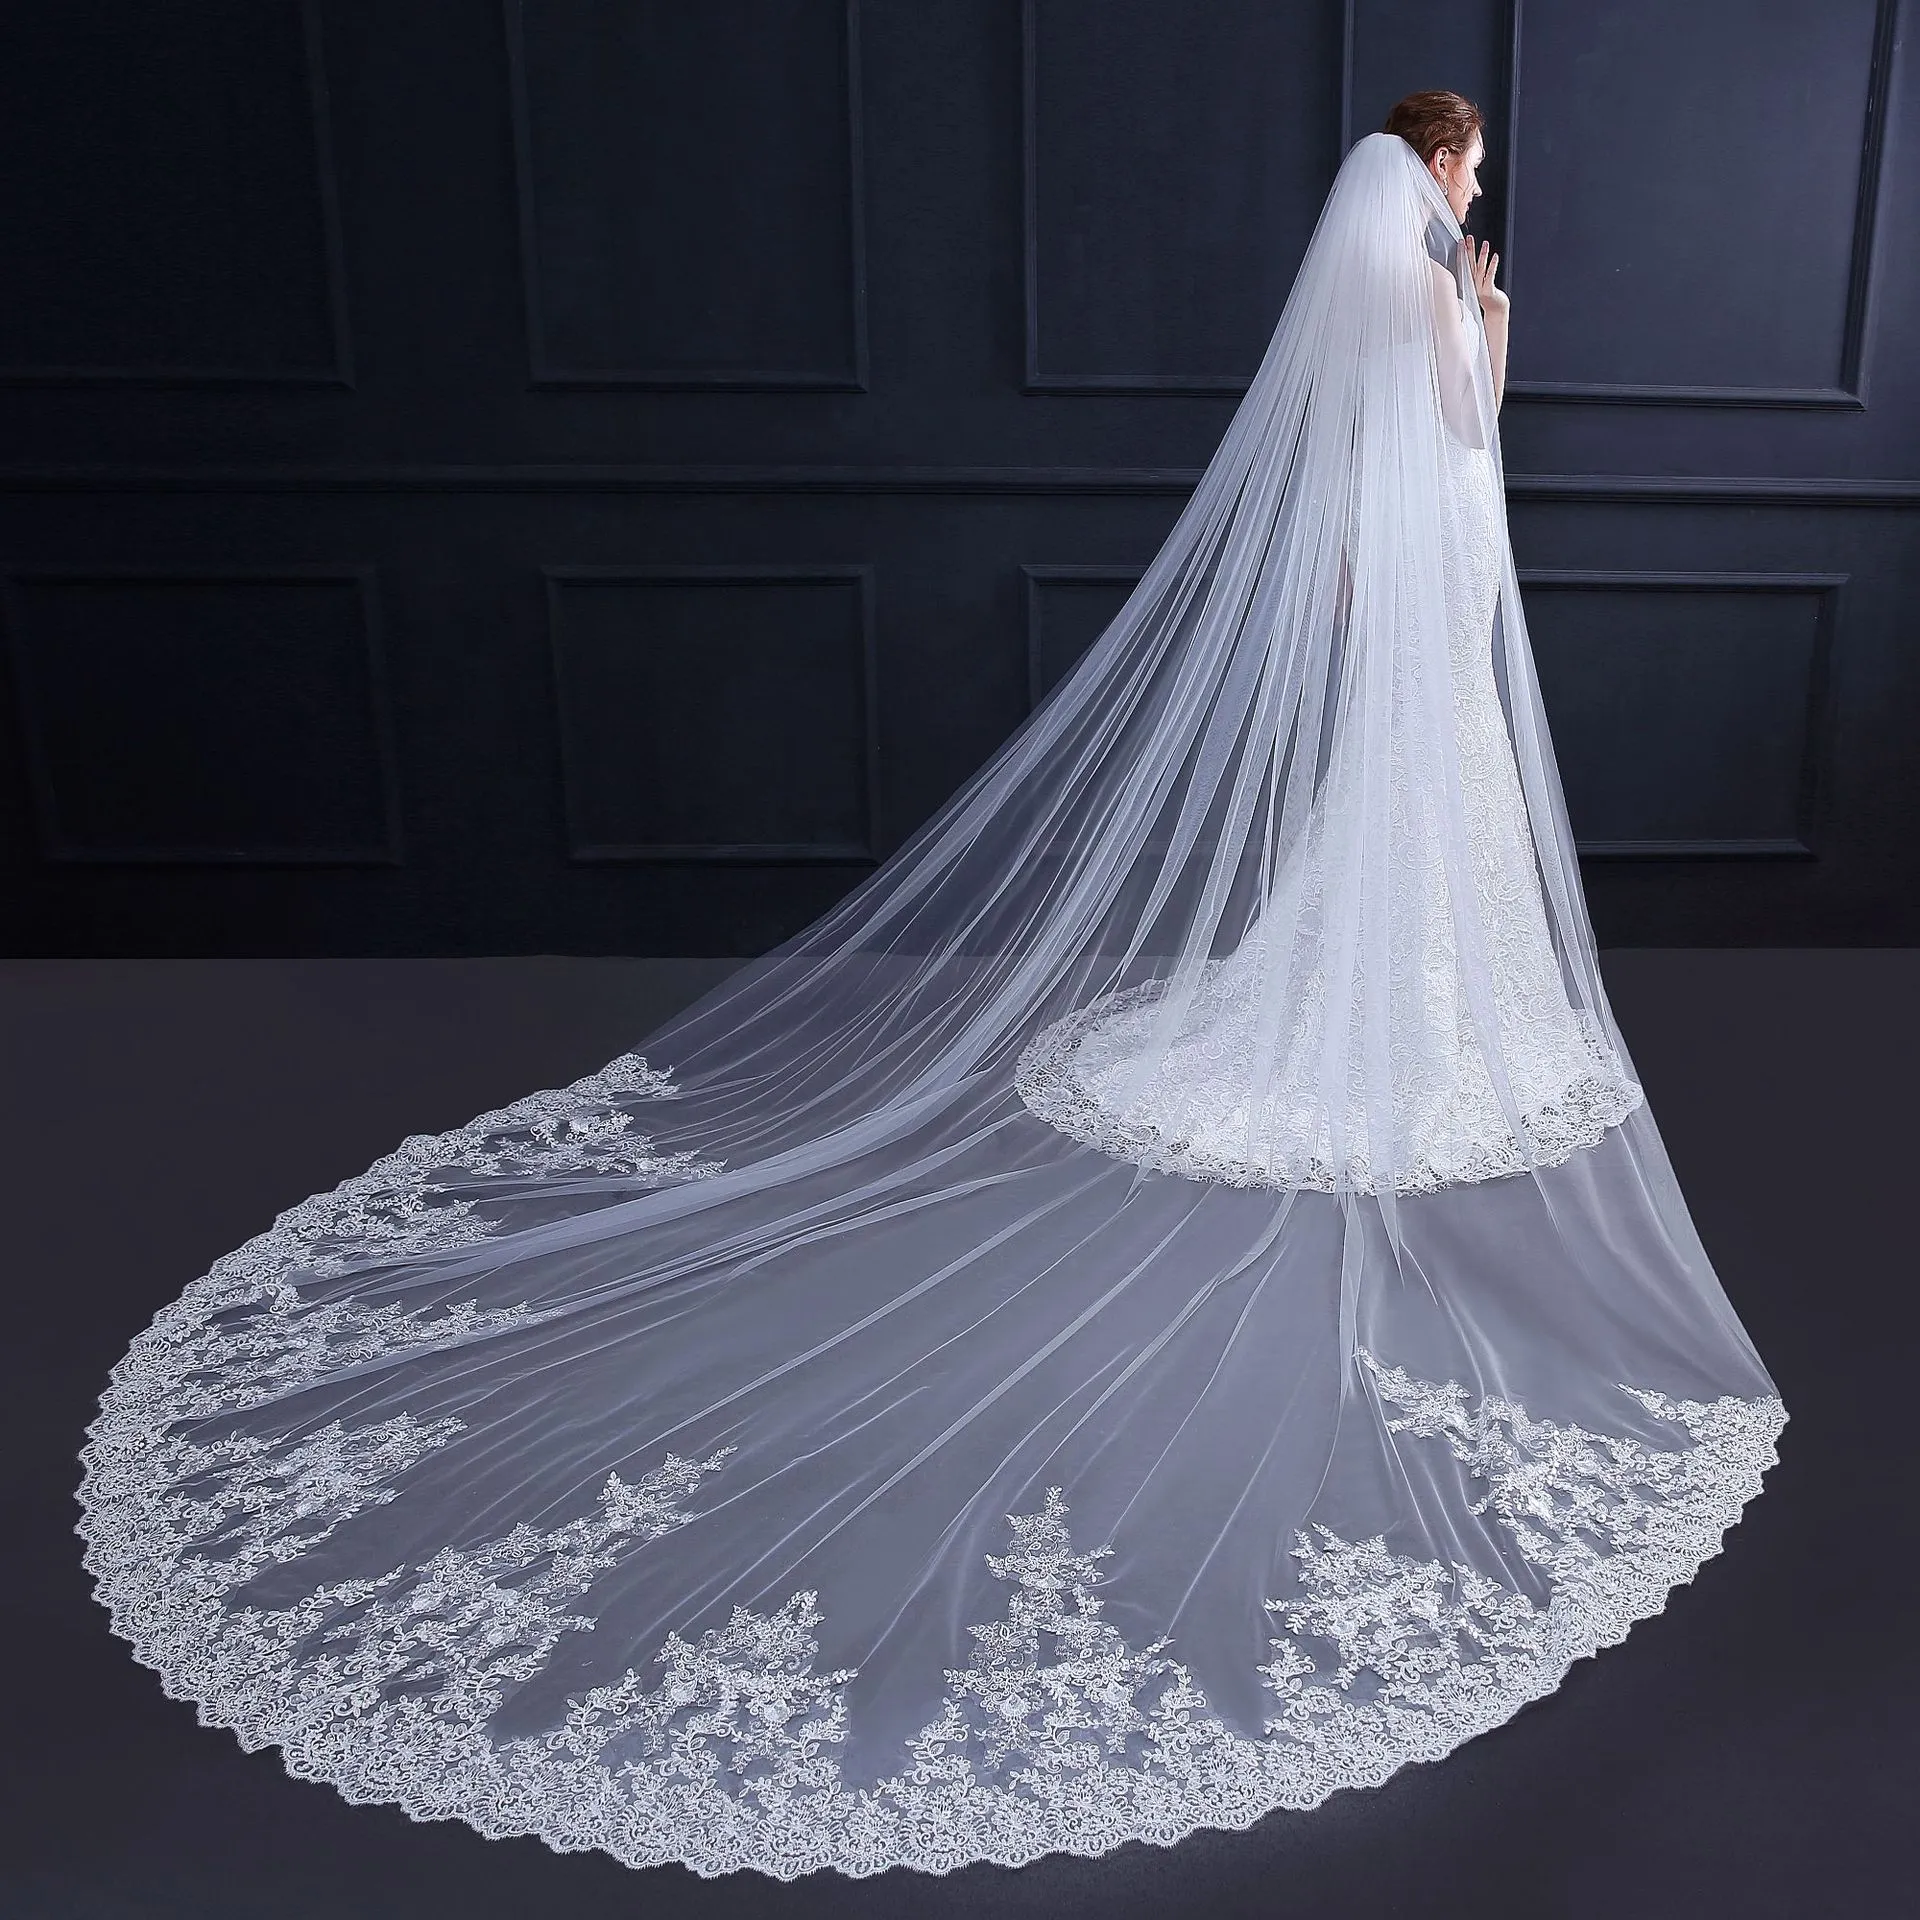 2019 한 레이어 아이보리 3.5m 결혼식 Brial Veils 레이스 Applique Cathedral 긴 신부 베일 공 가운 웨딩 드레스